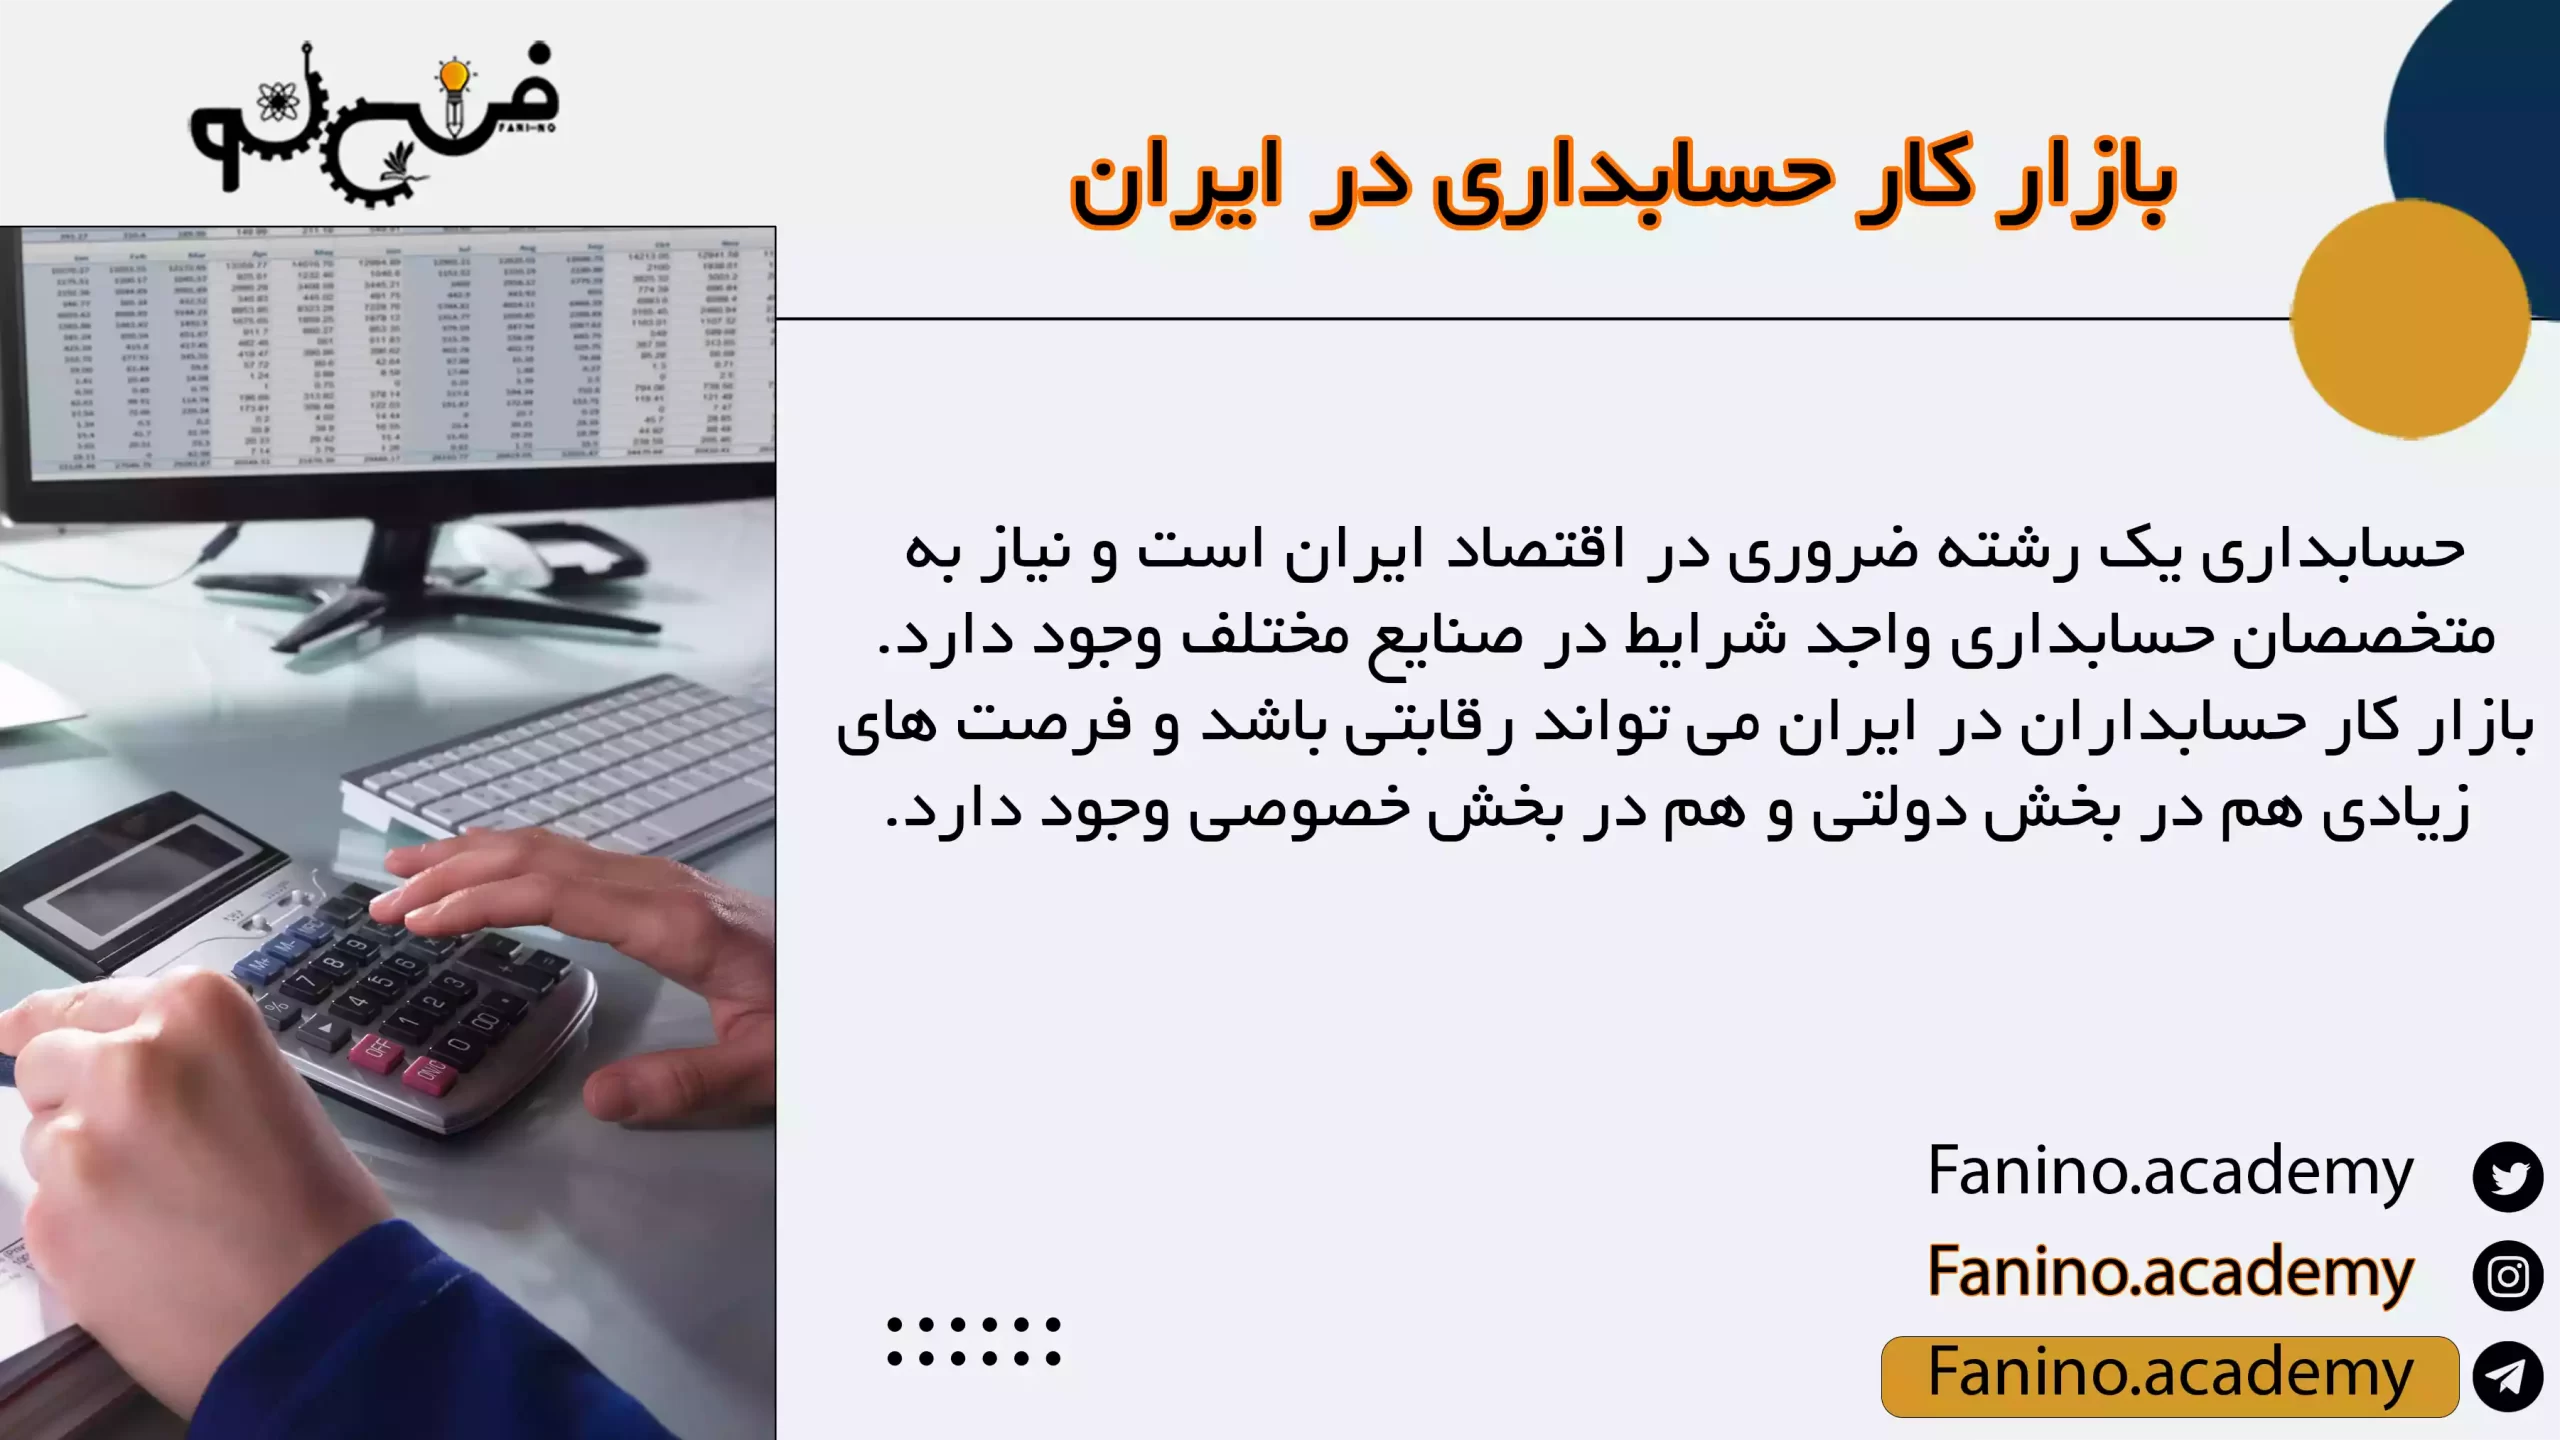 بازار کار حسابداری در ایران